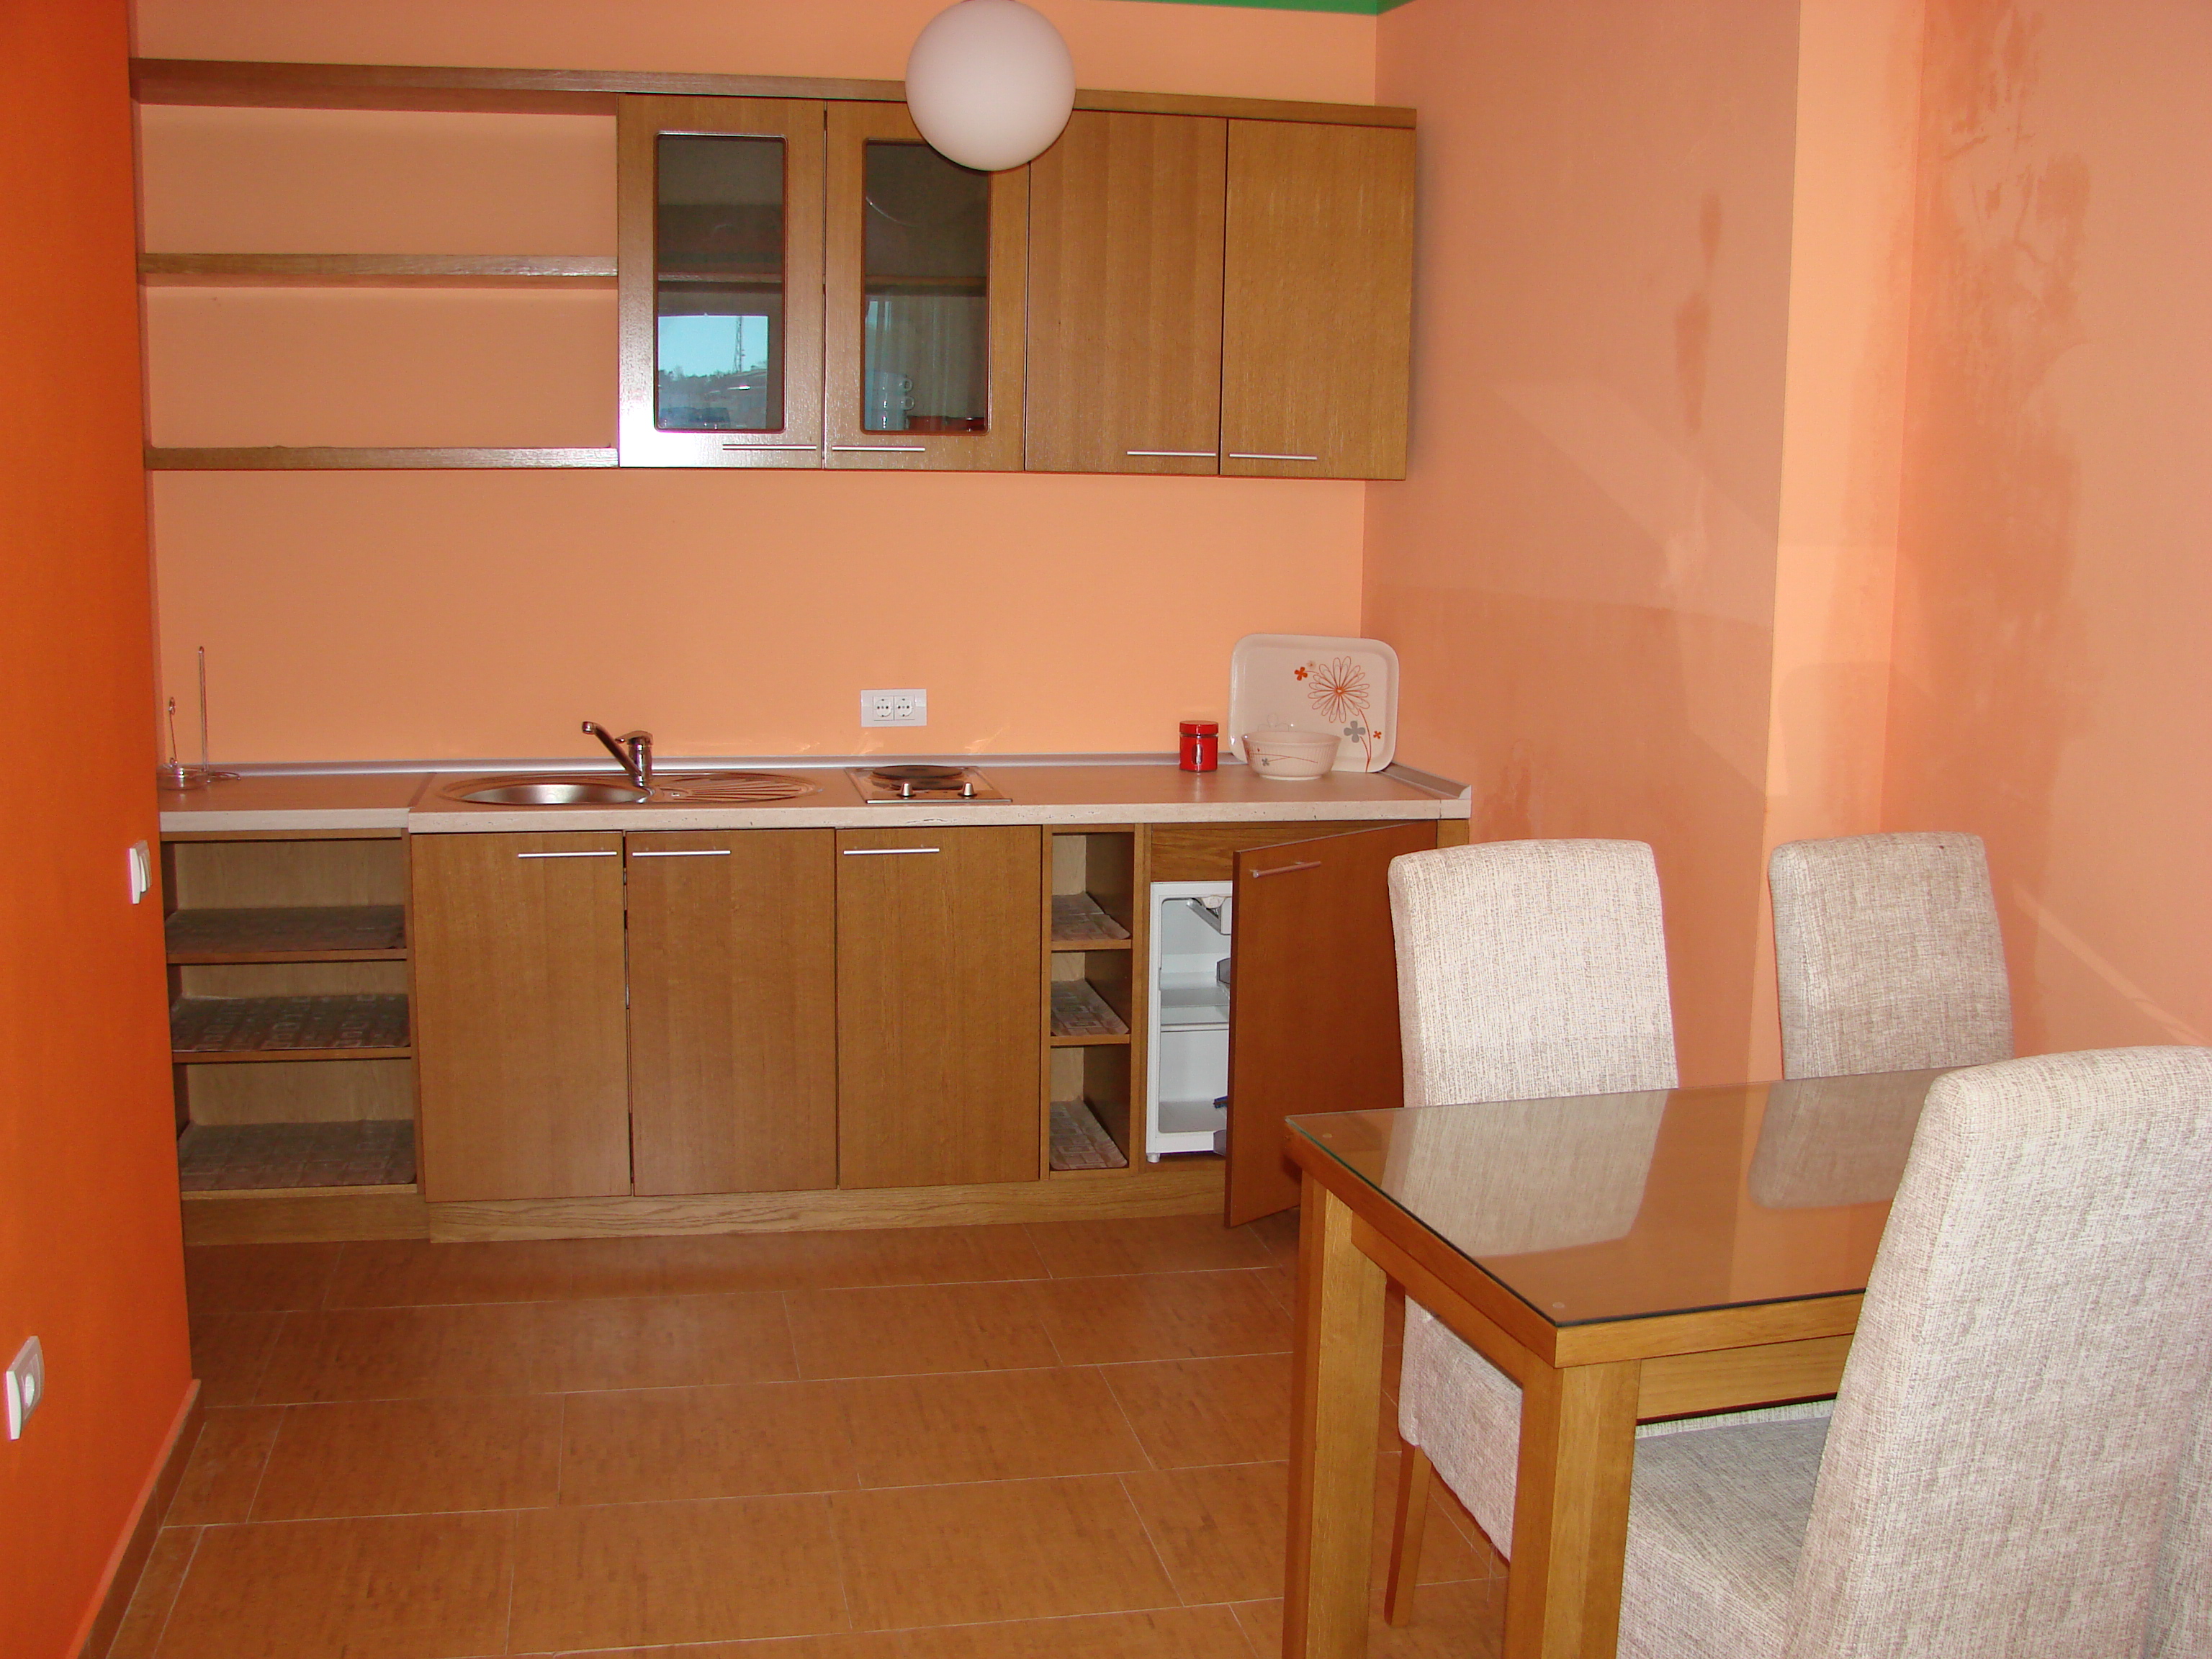  Кухонная зона в студии мини-отеля в Черногории